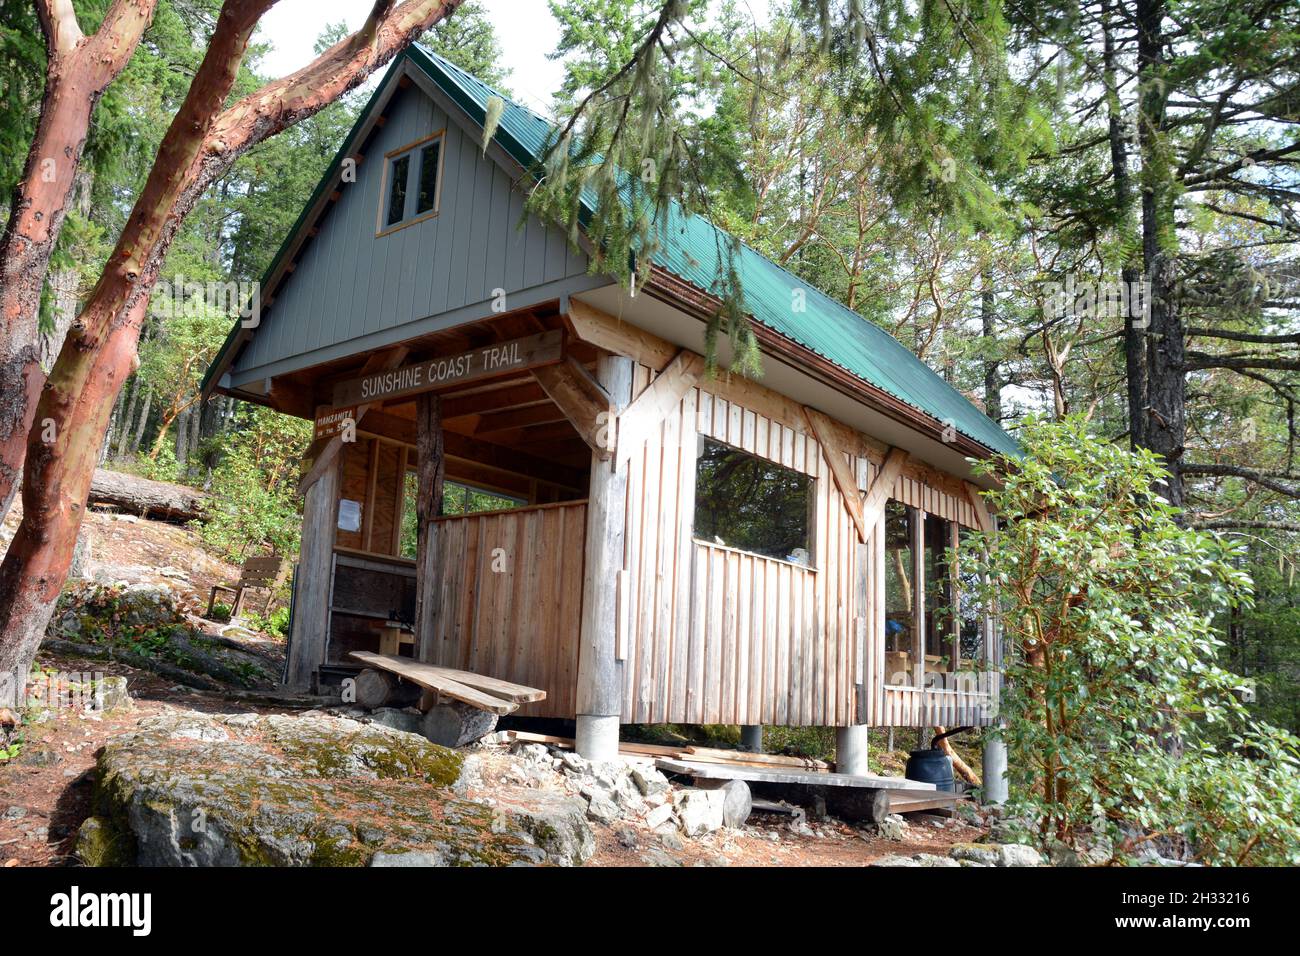 Die Manzanita Hütte liegt im gemäßigten Regenwald, am Sunshine Coast Trail, in der Nähe von Lund, British Columbia, Kanada. Stockfoto